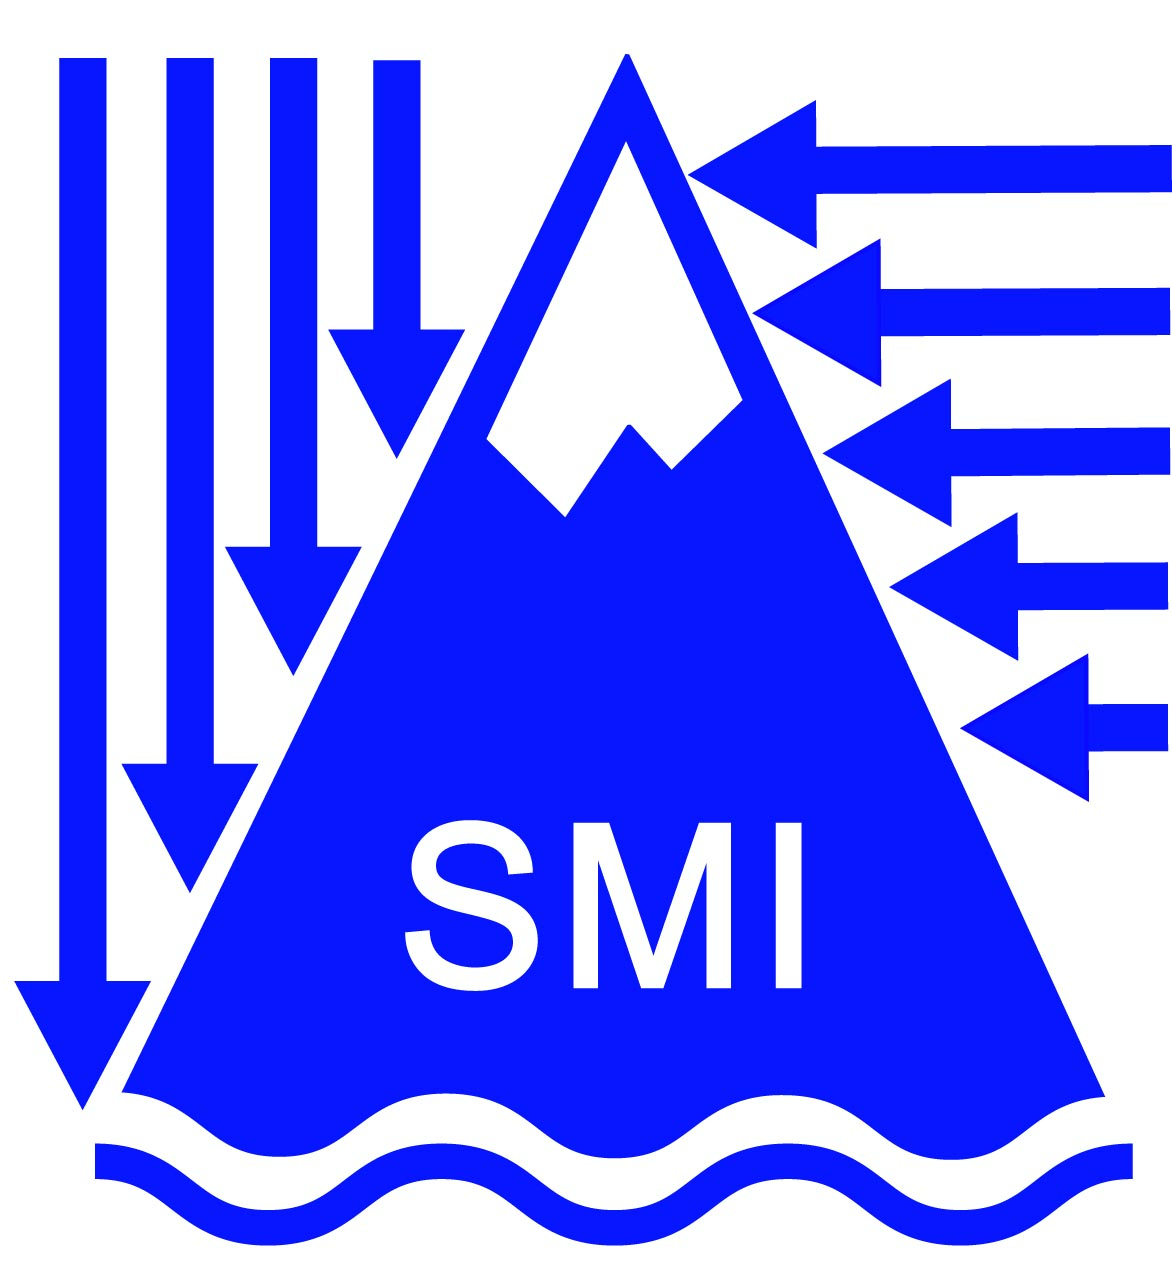  Società Meteorologica Italiana (SMI)  